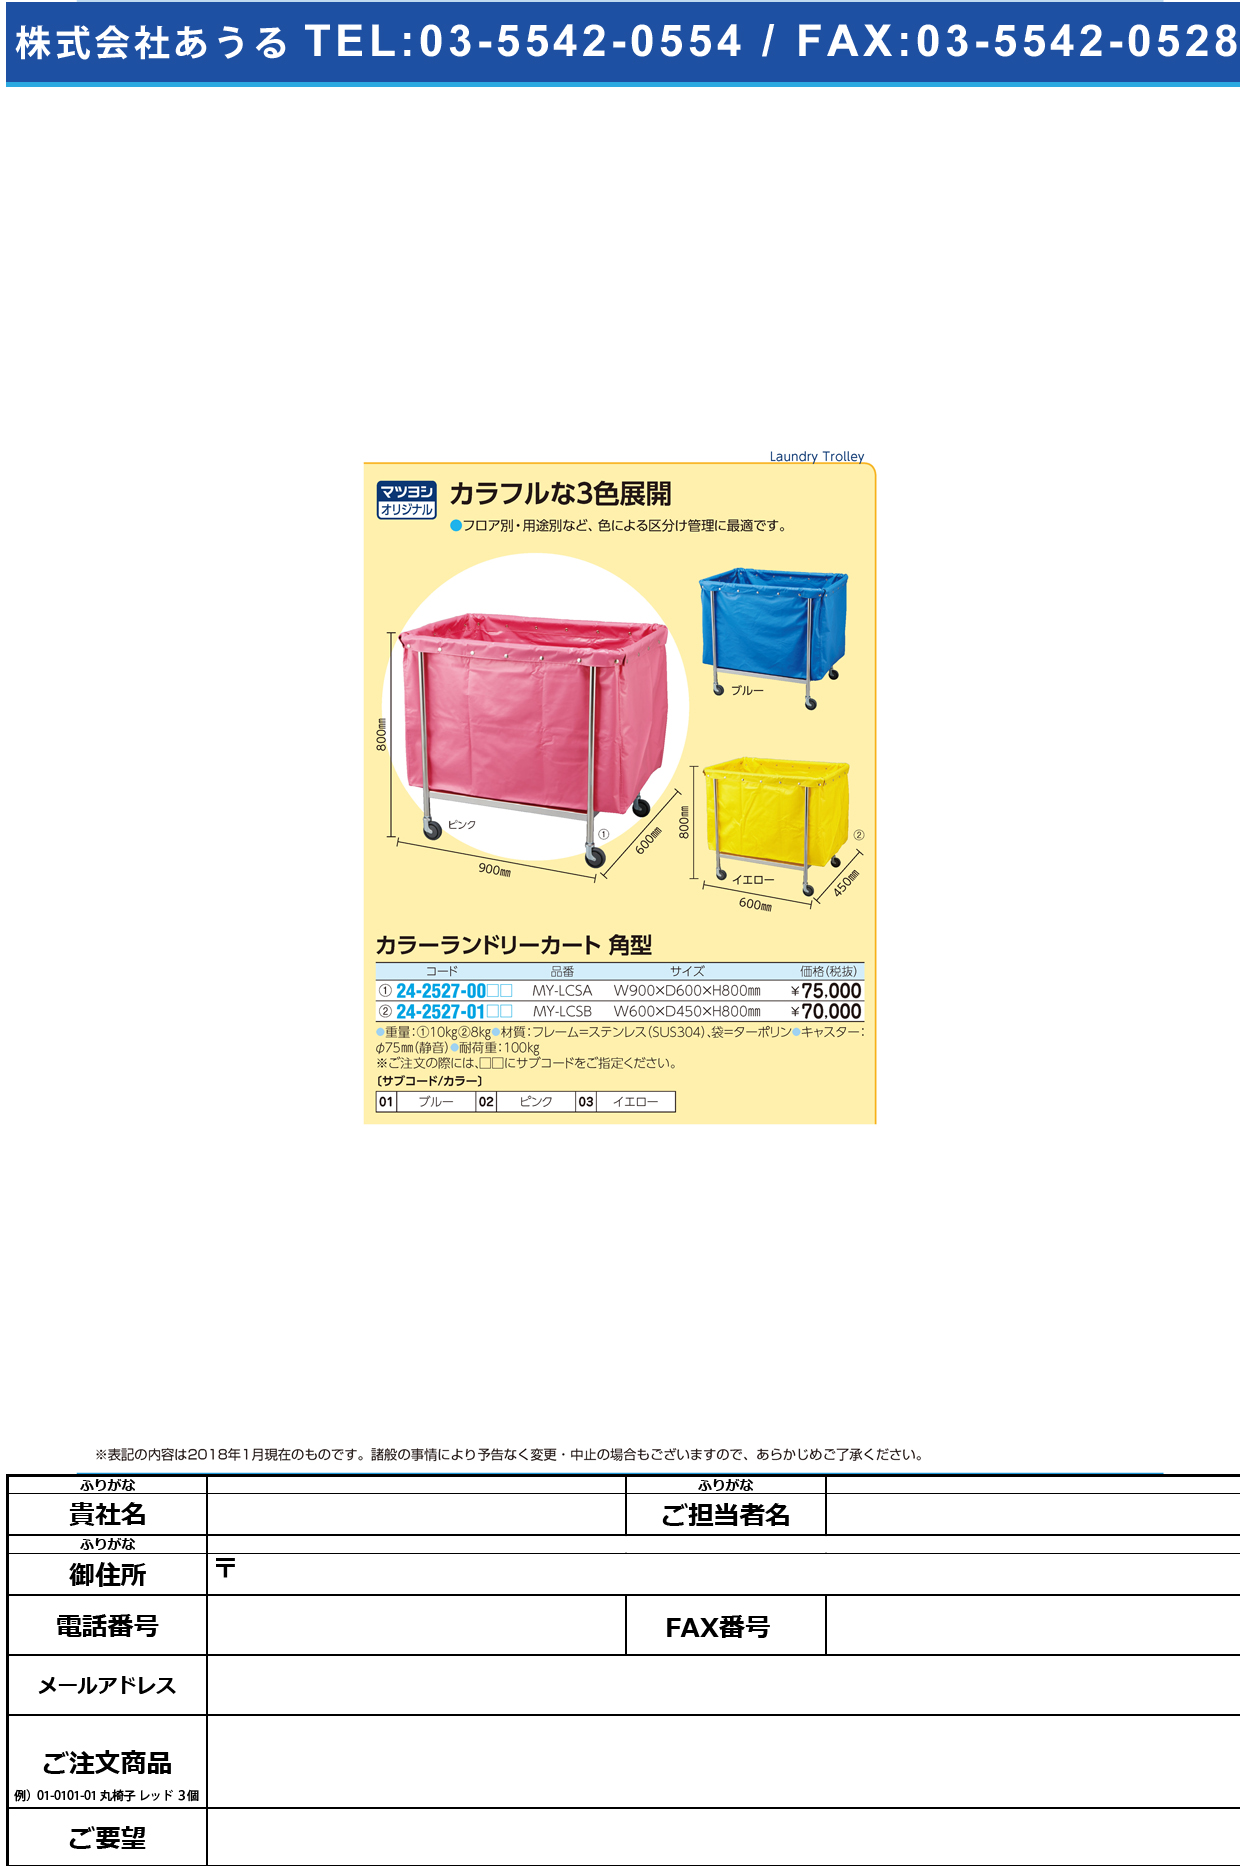 (24-2527-01)カラーランドリーカート（角型） MY-LCSB(600X450X800) ｶﾗｰﾗﾝﾄﾞﾘｰｶｰﾄｶｸｶﾞﾀ ピンク【1台単位】【2019年カタログ商品】